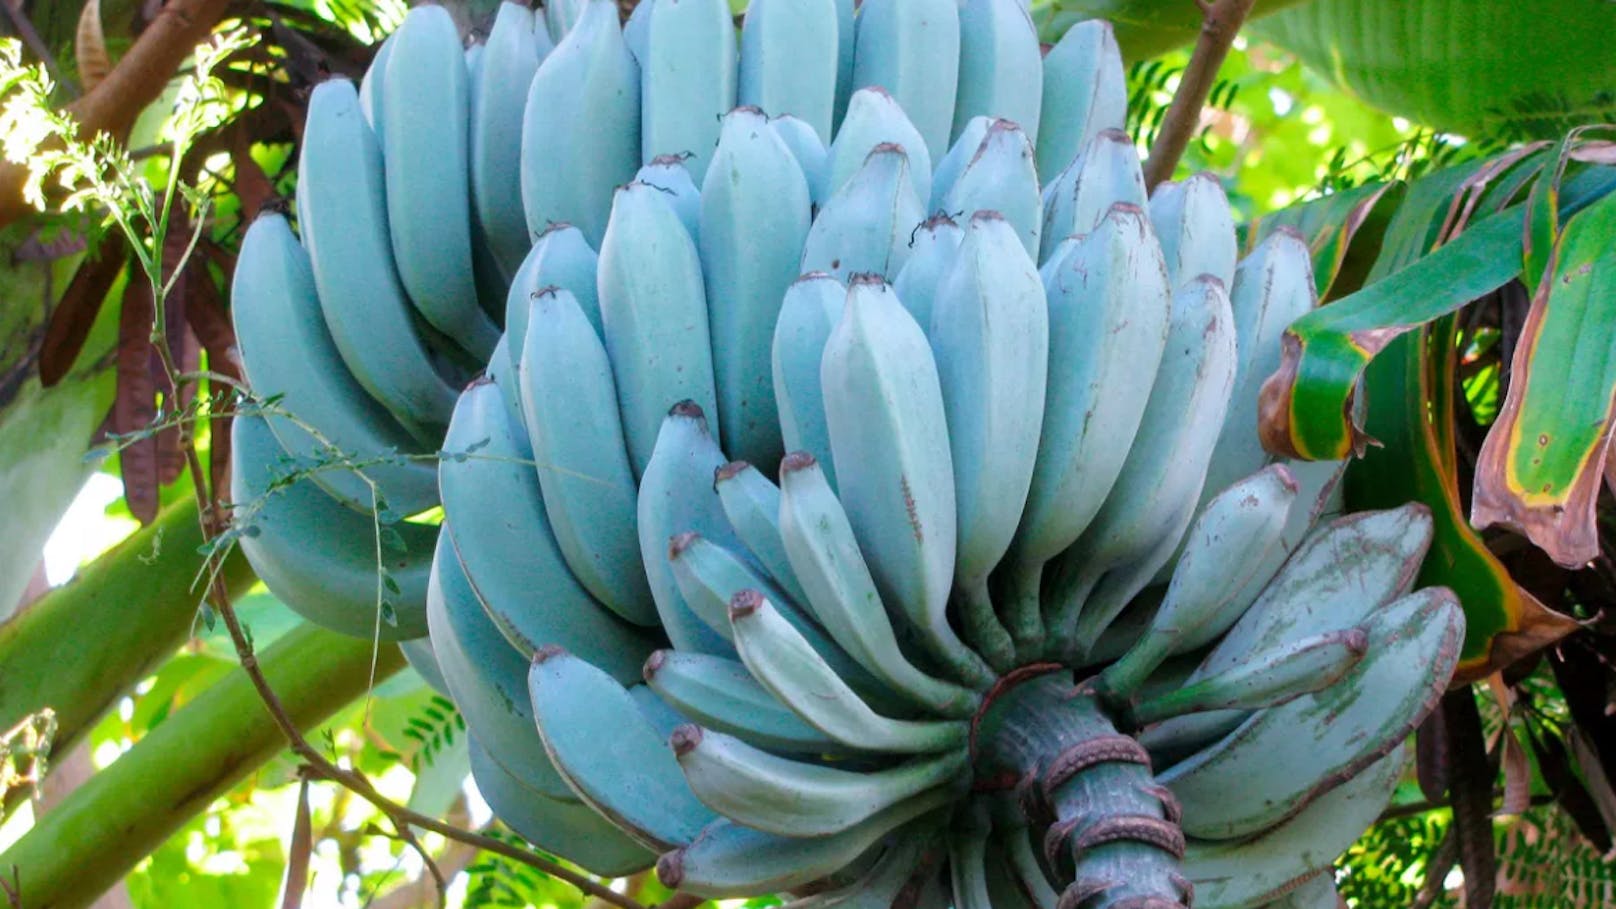 In Südostasien und Fidschi wachsen blaue Bananen.